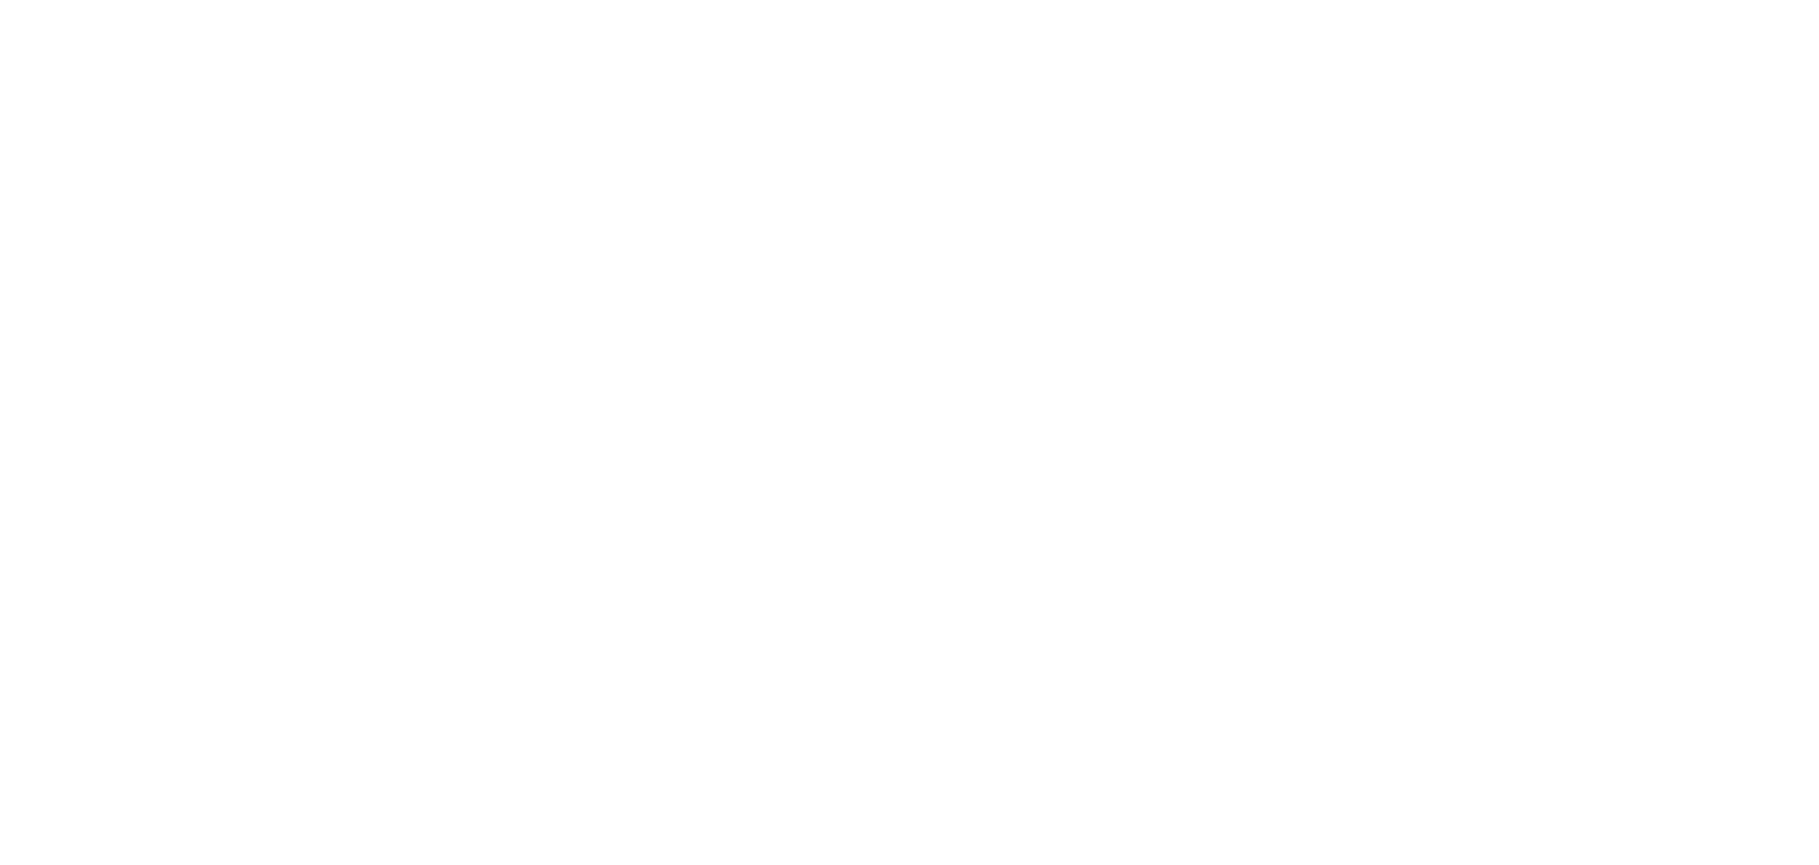 senior living companies in florida